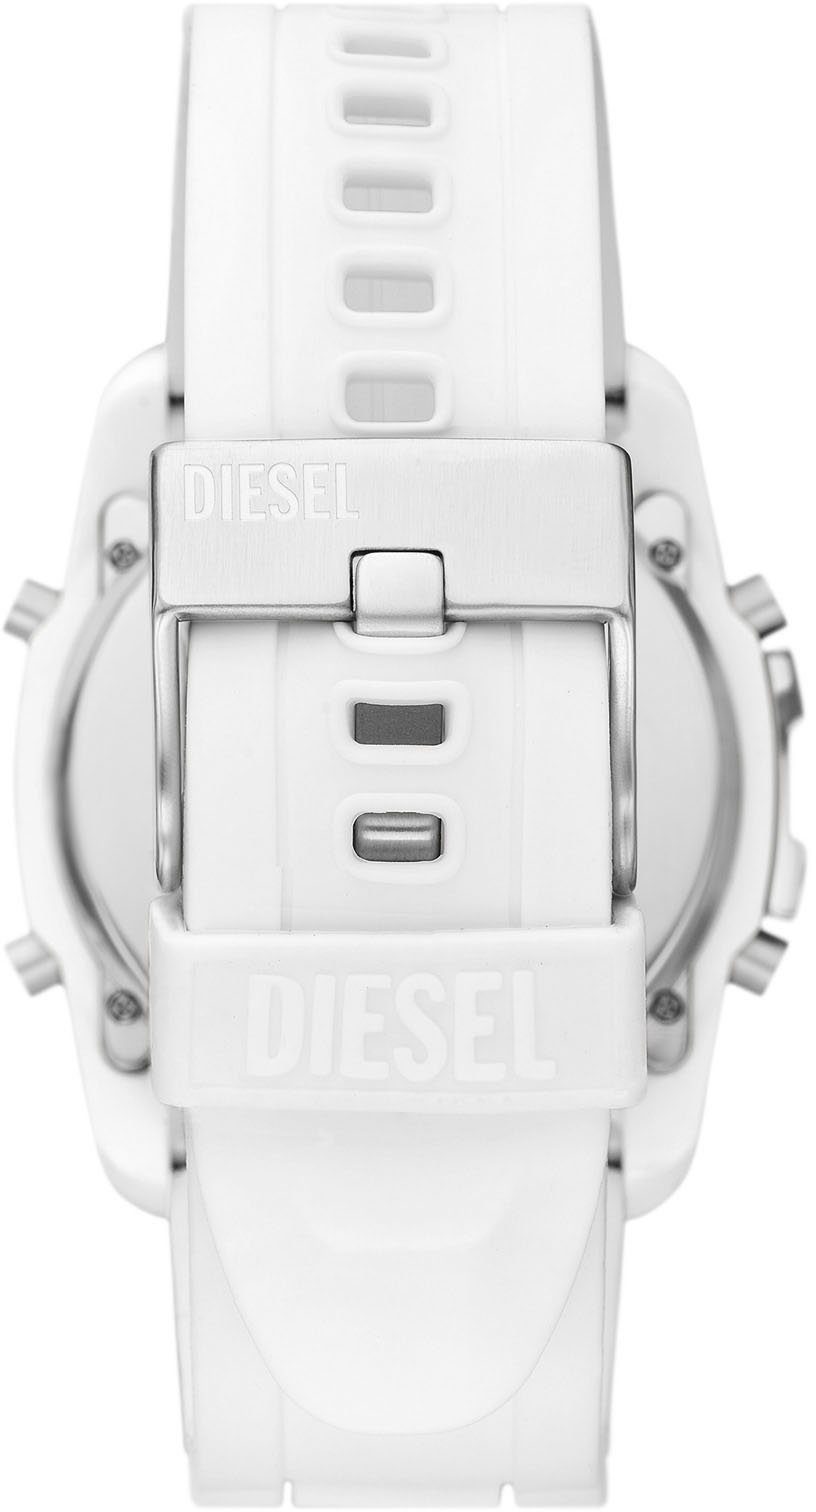 Digitaluhr DZ2157 CHIEF, Diesel MASTER